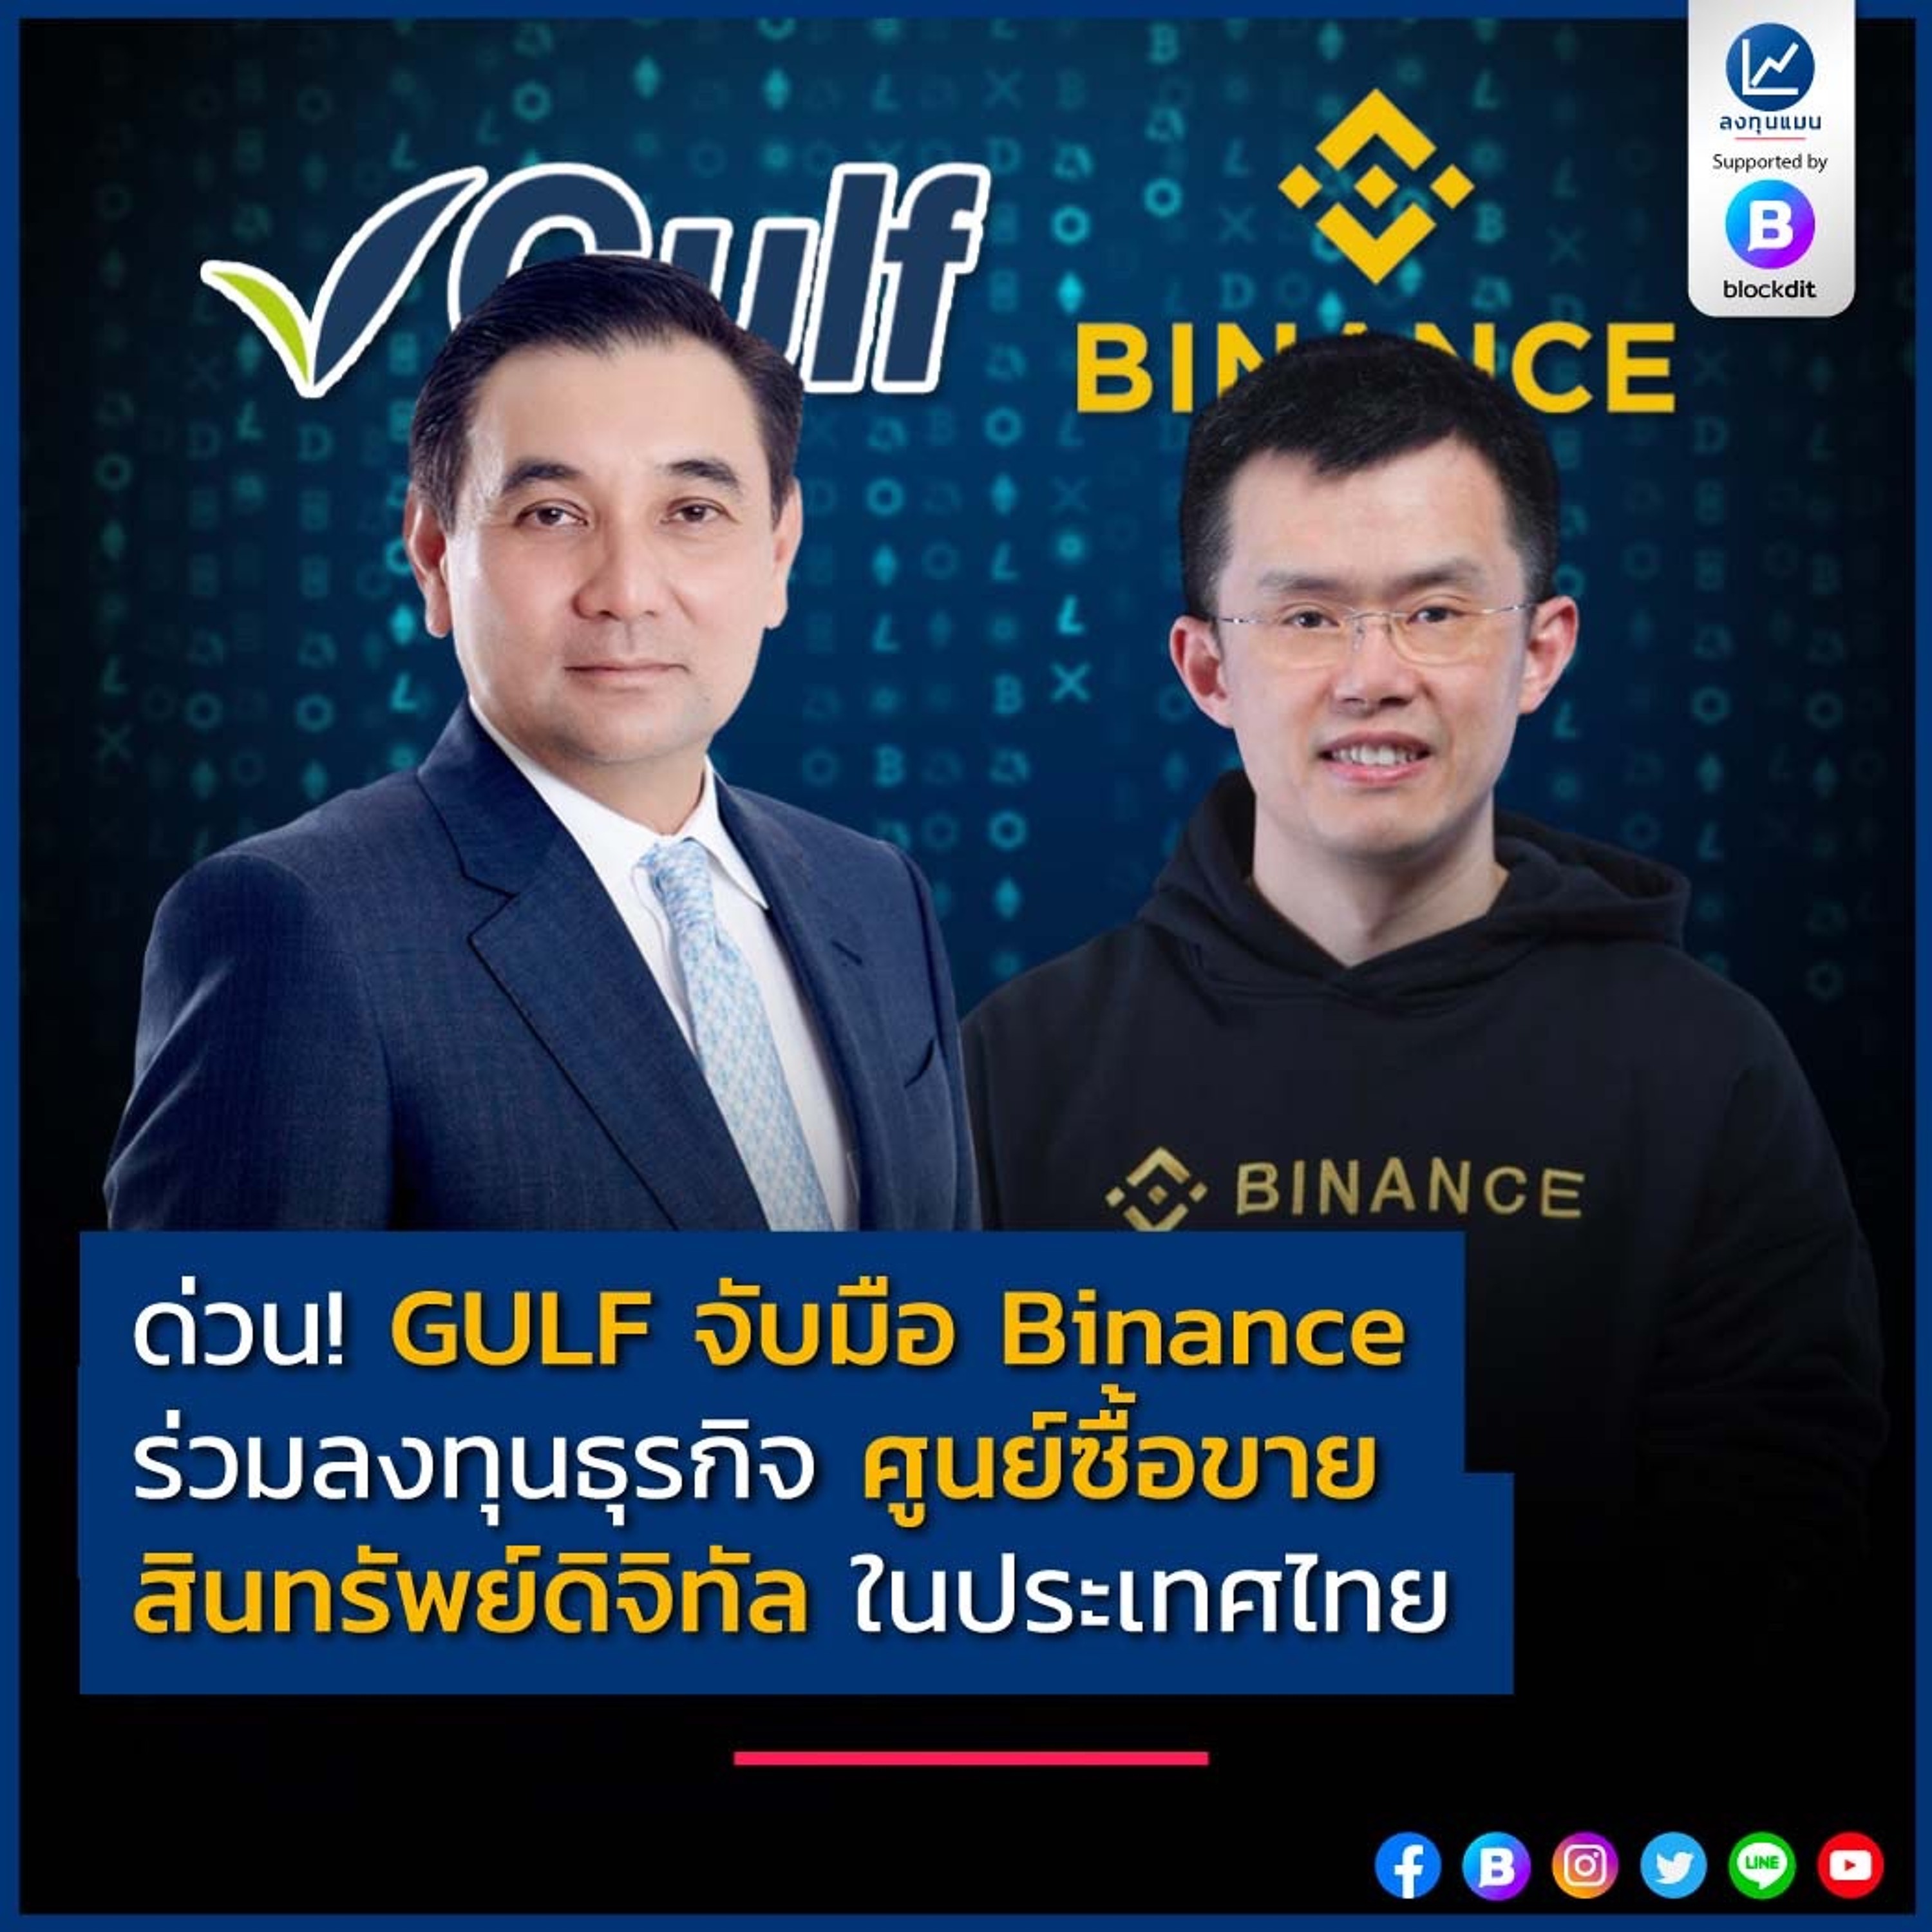 ด่วน! GULF จับมือ Binance ร่วมลงทุนธุรกิจ ศูนย์ซื้อขายสินทรัพย์ดิจิทัล ในประเทศไทย